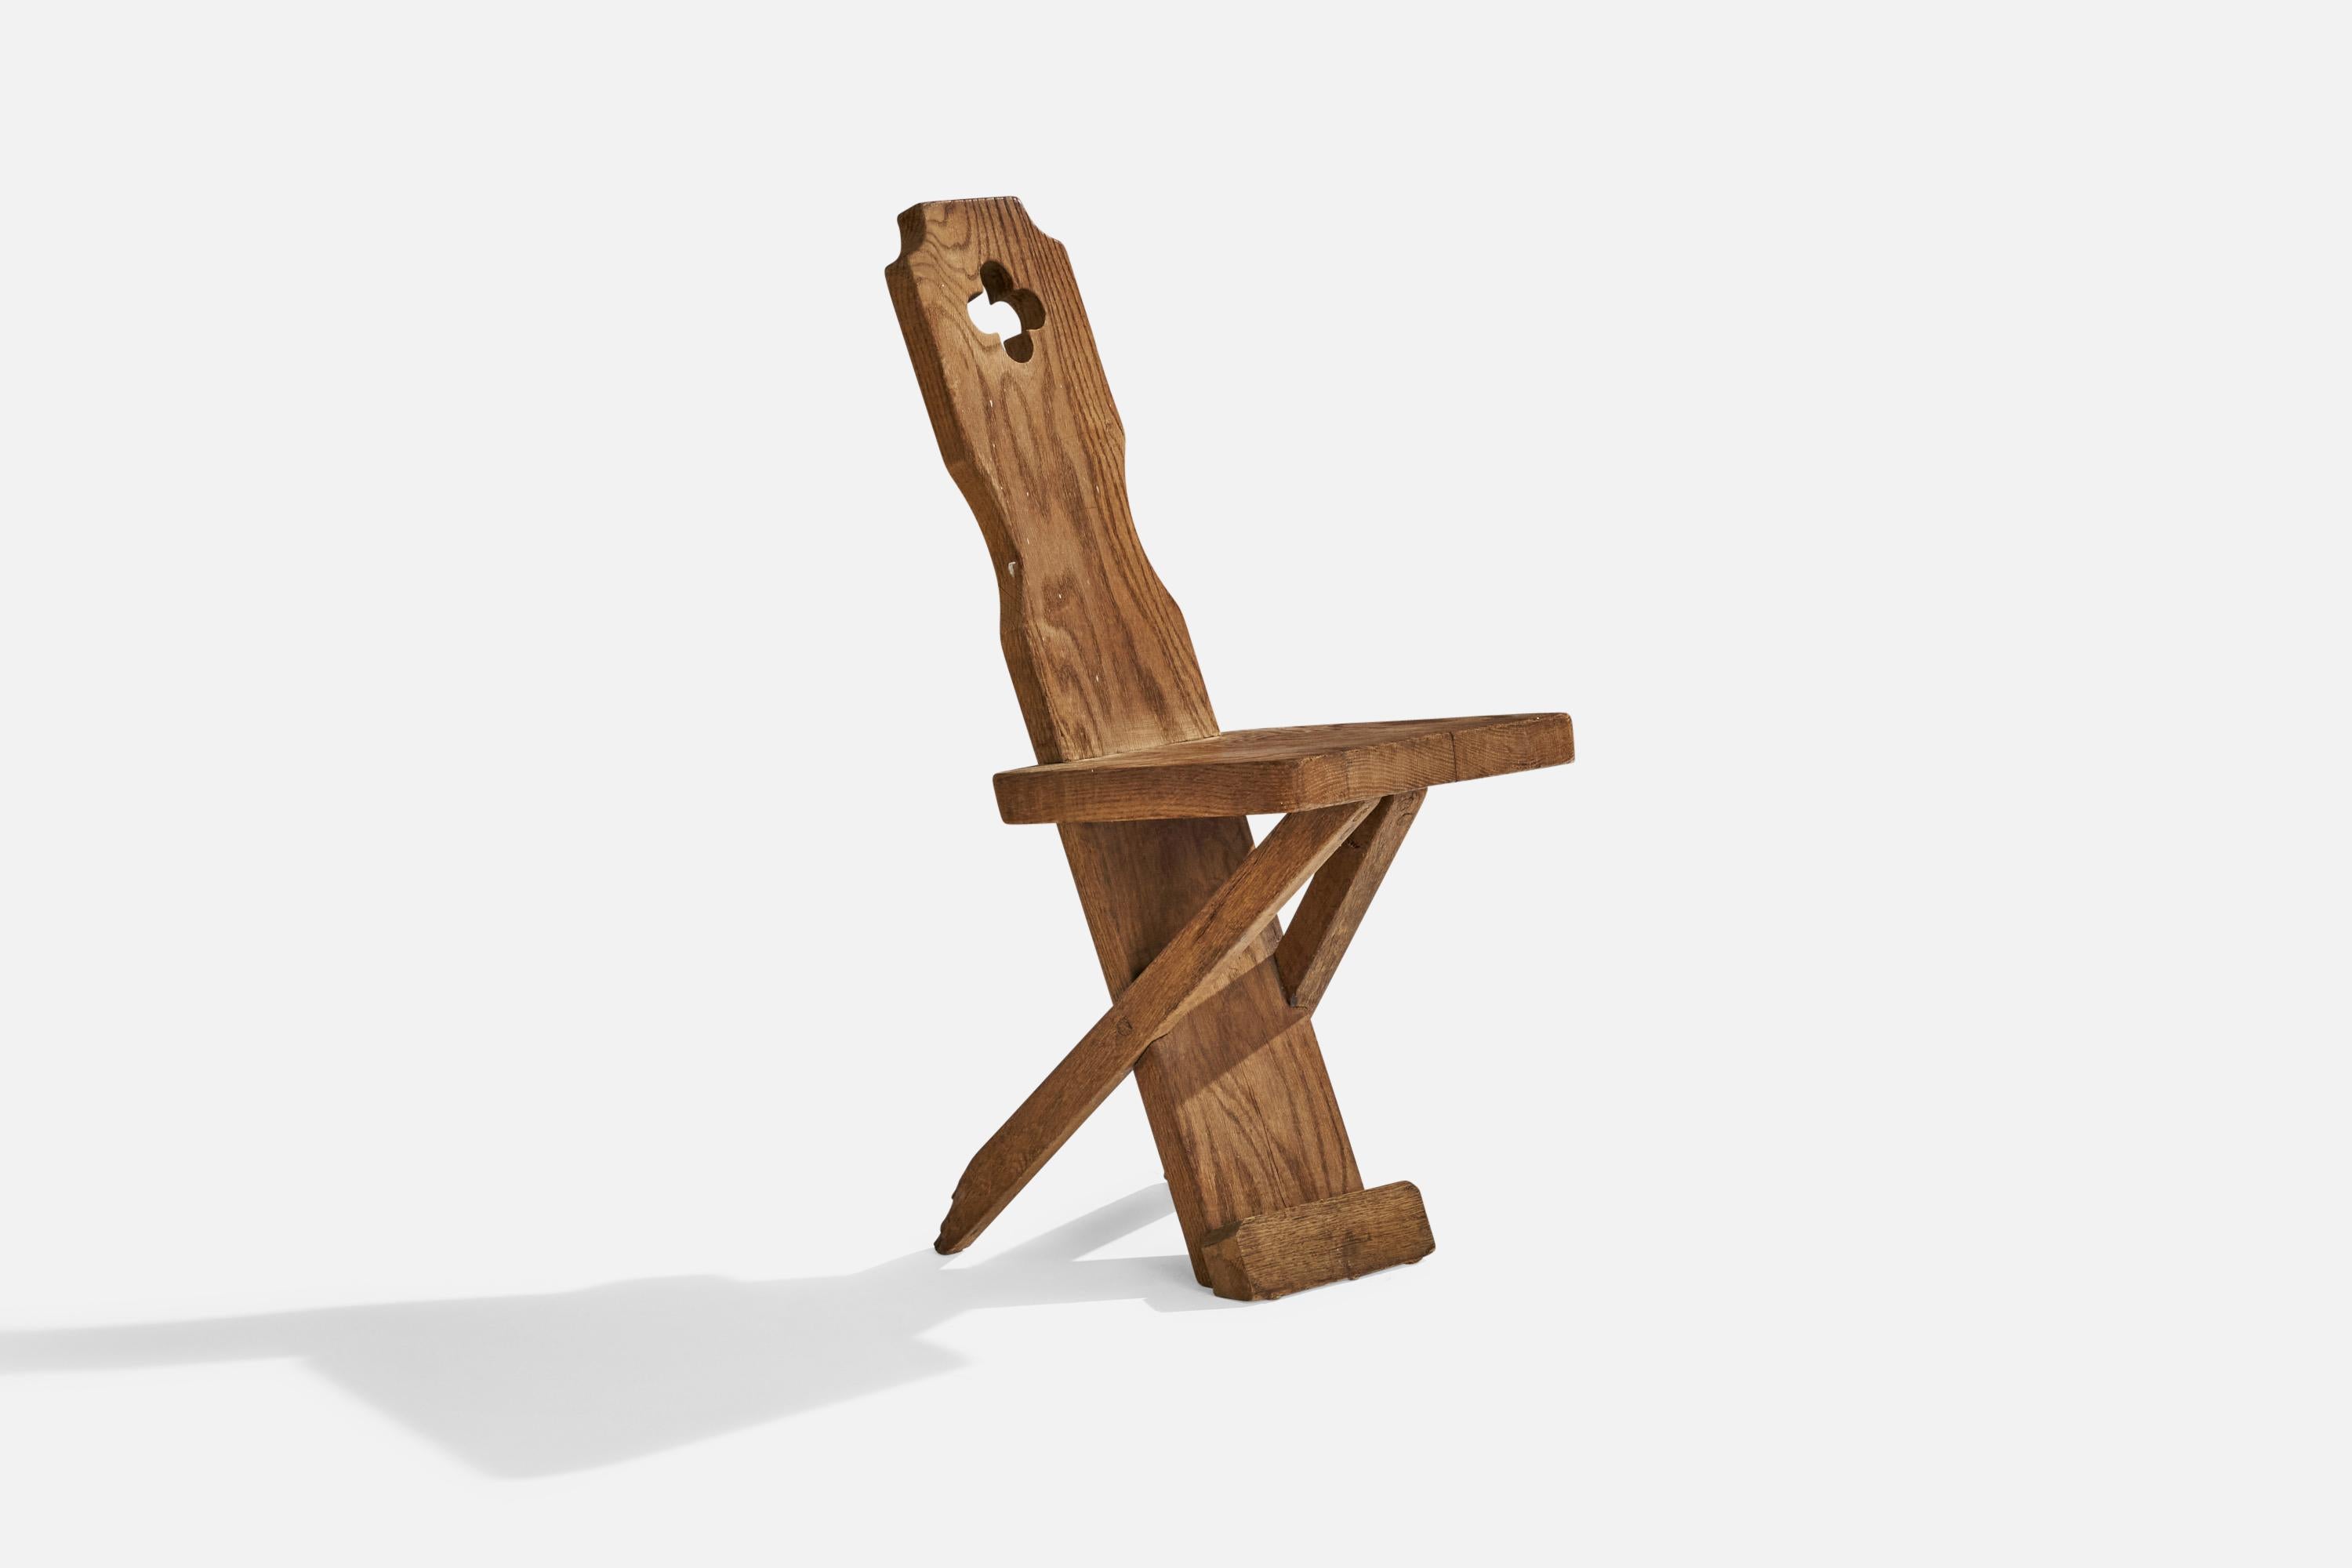 Chaise d'appoint ou chaise de salle à manger en chêne, conçue et fabriquée au Danemark, C.C. 1920.

Hauteur d'assise 18